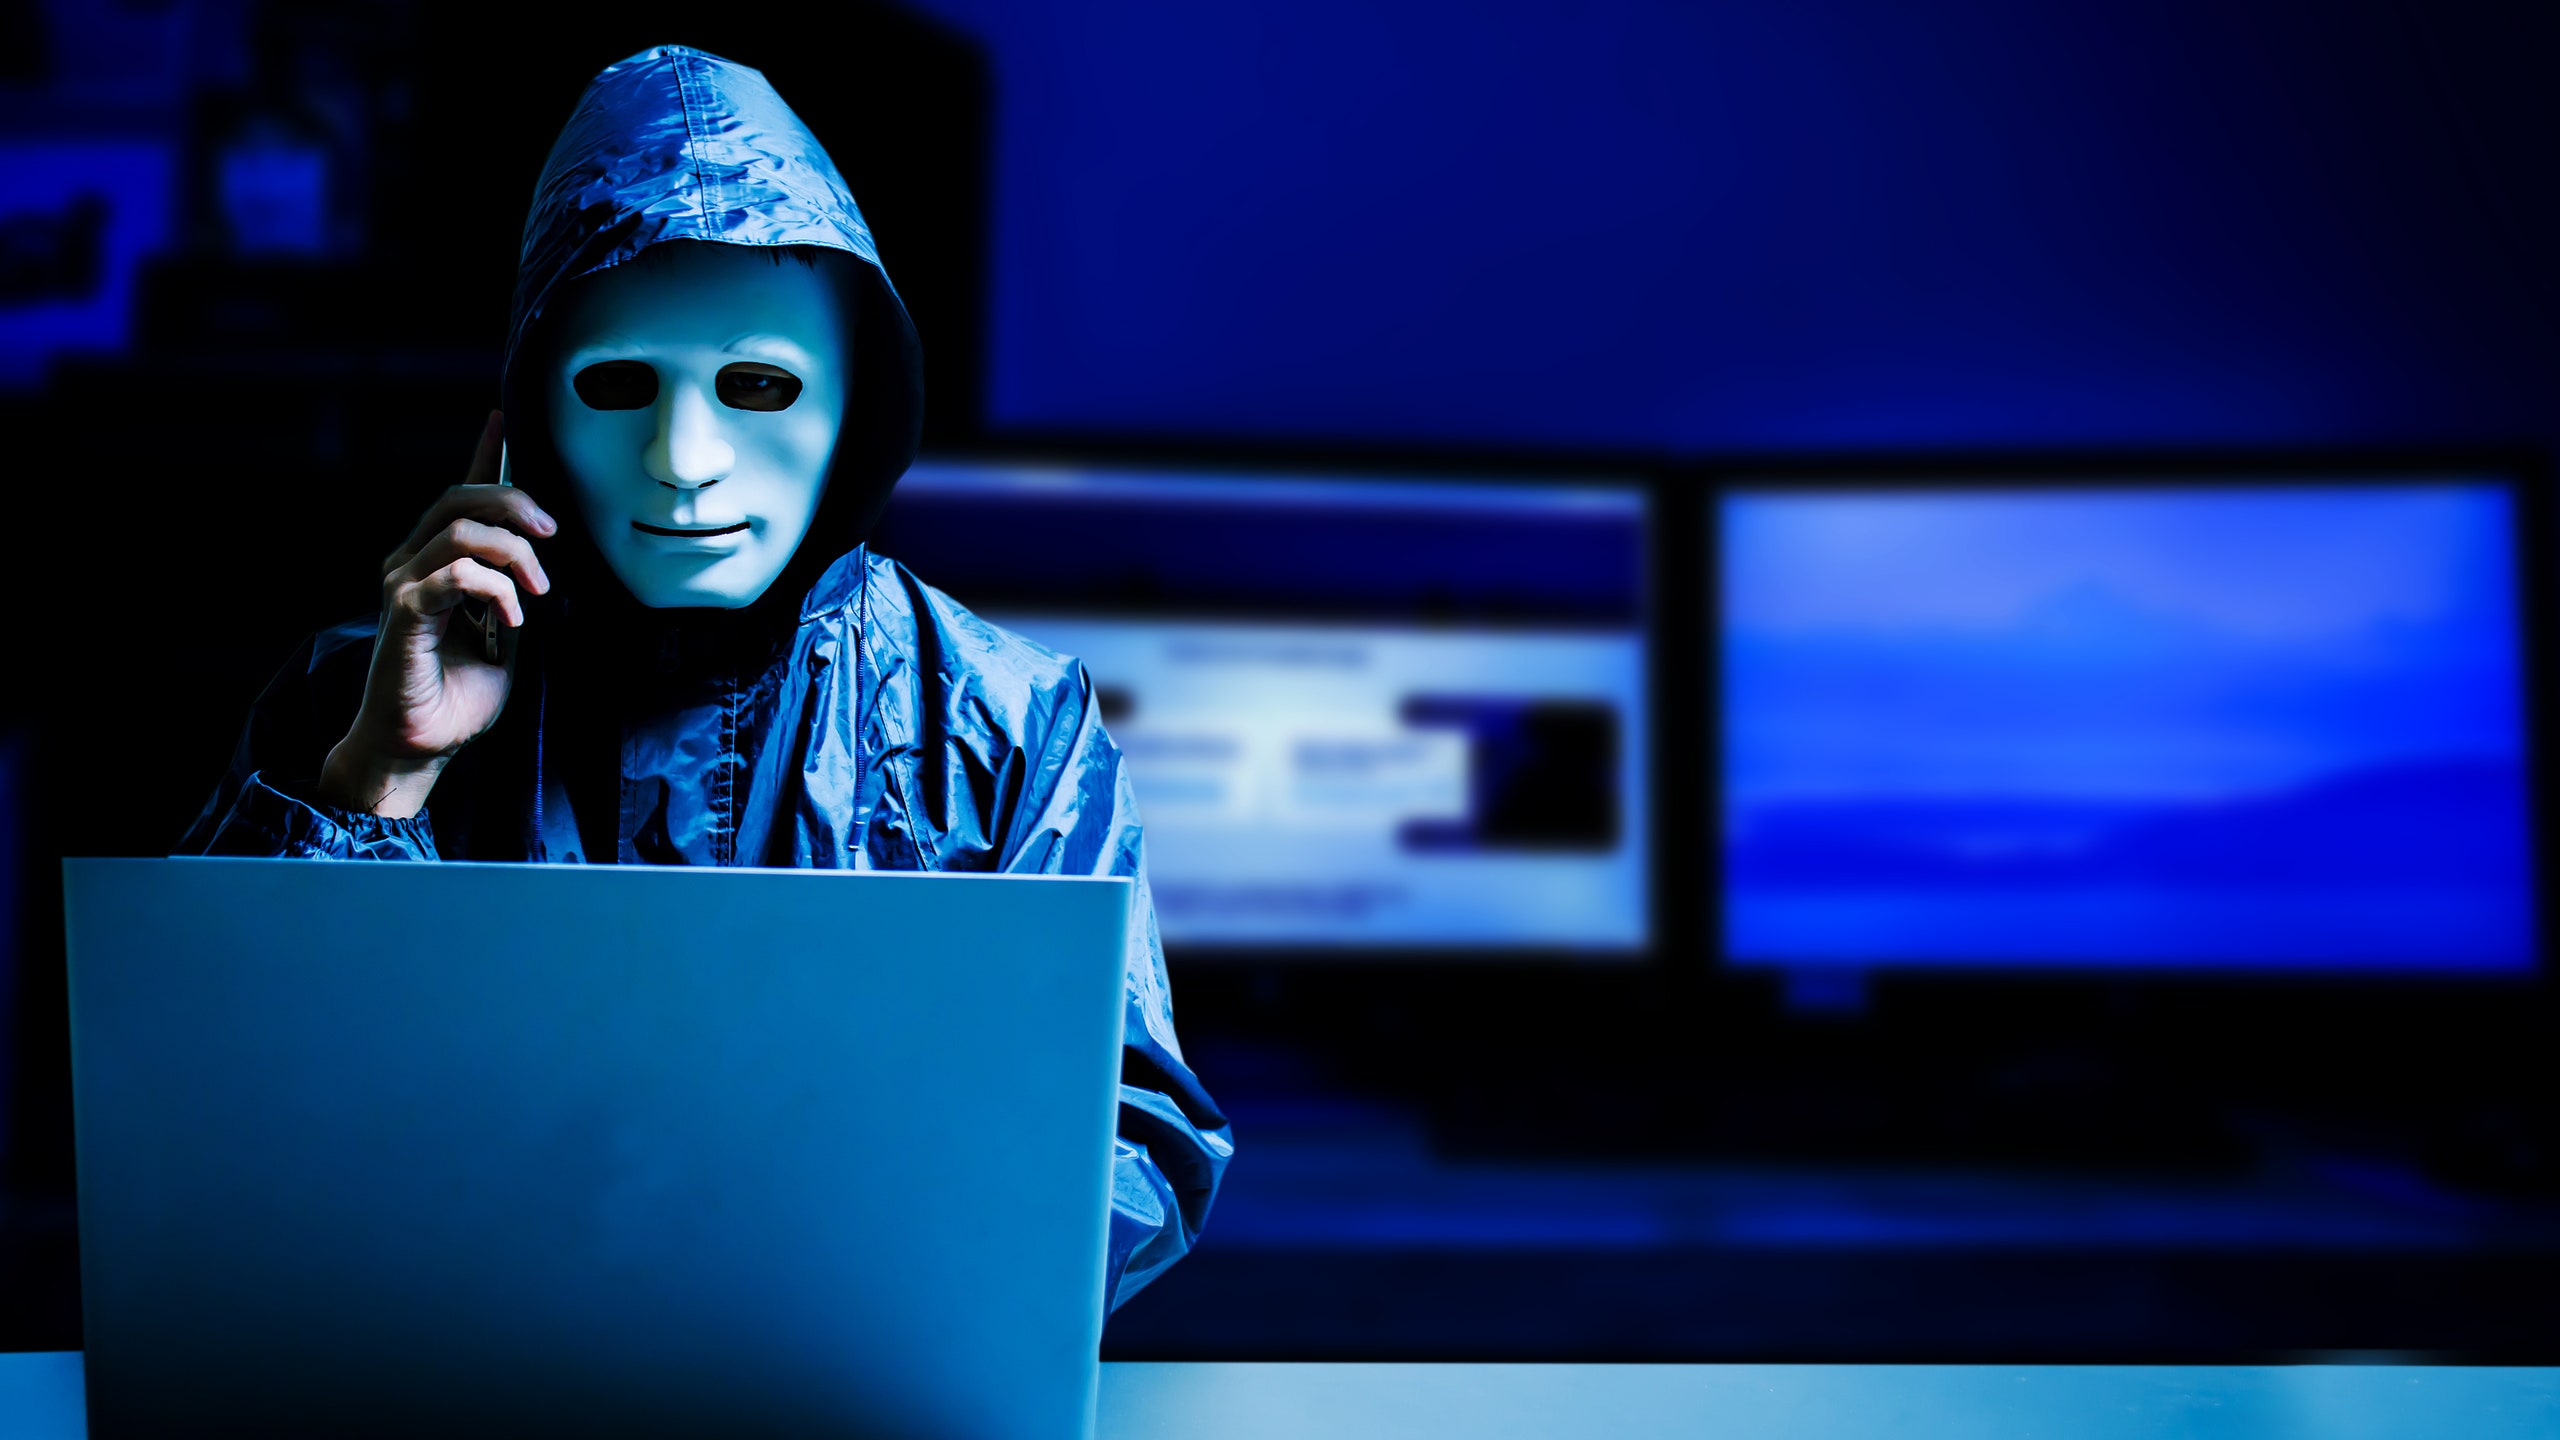 55летняя женщина из России оказалась основательницей преступной хакерской группировки